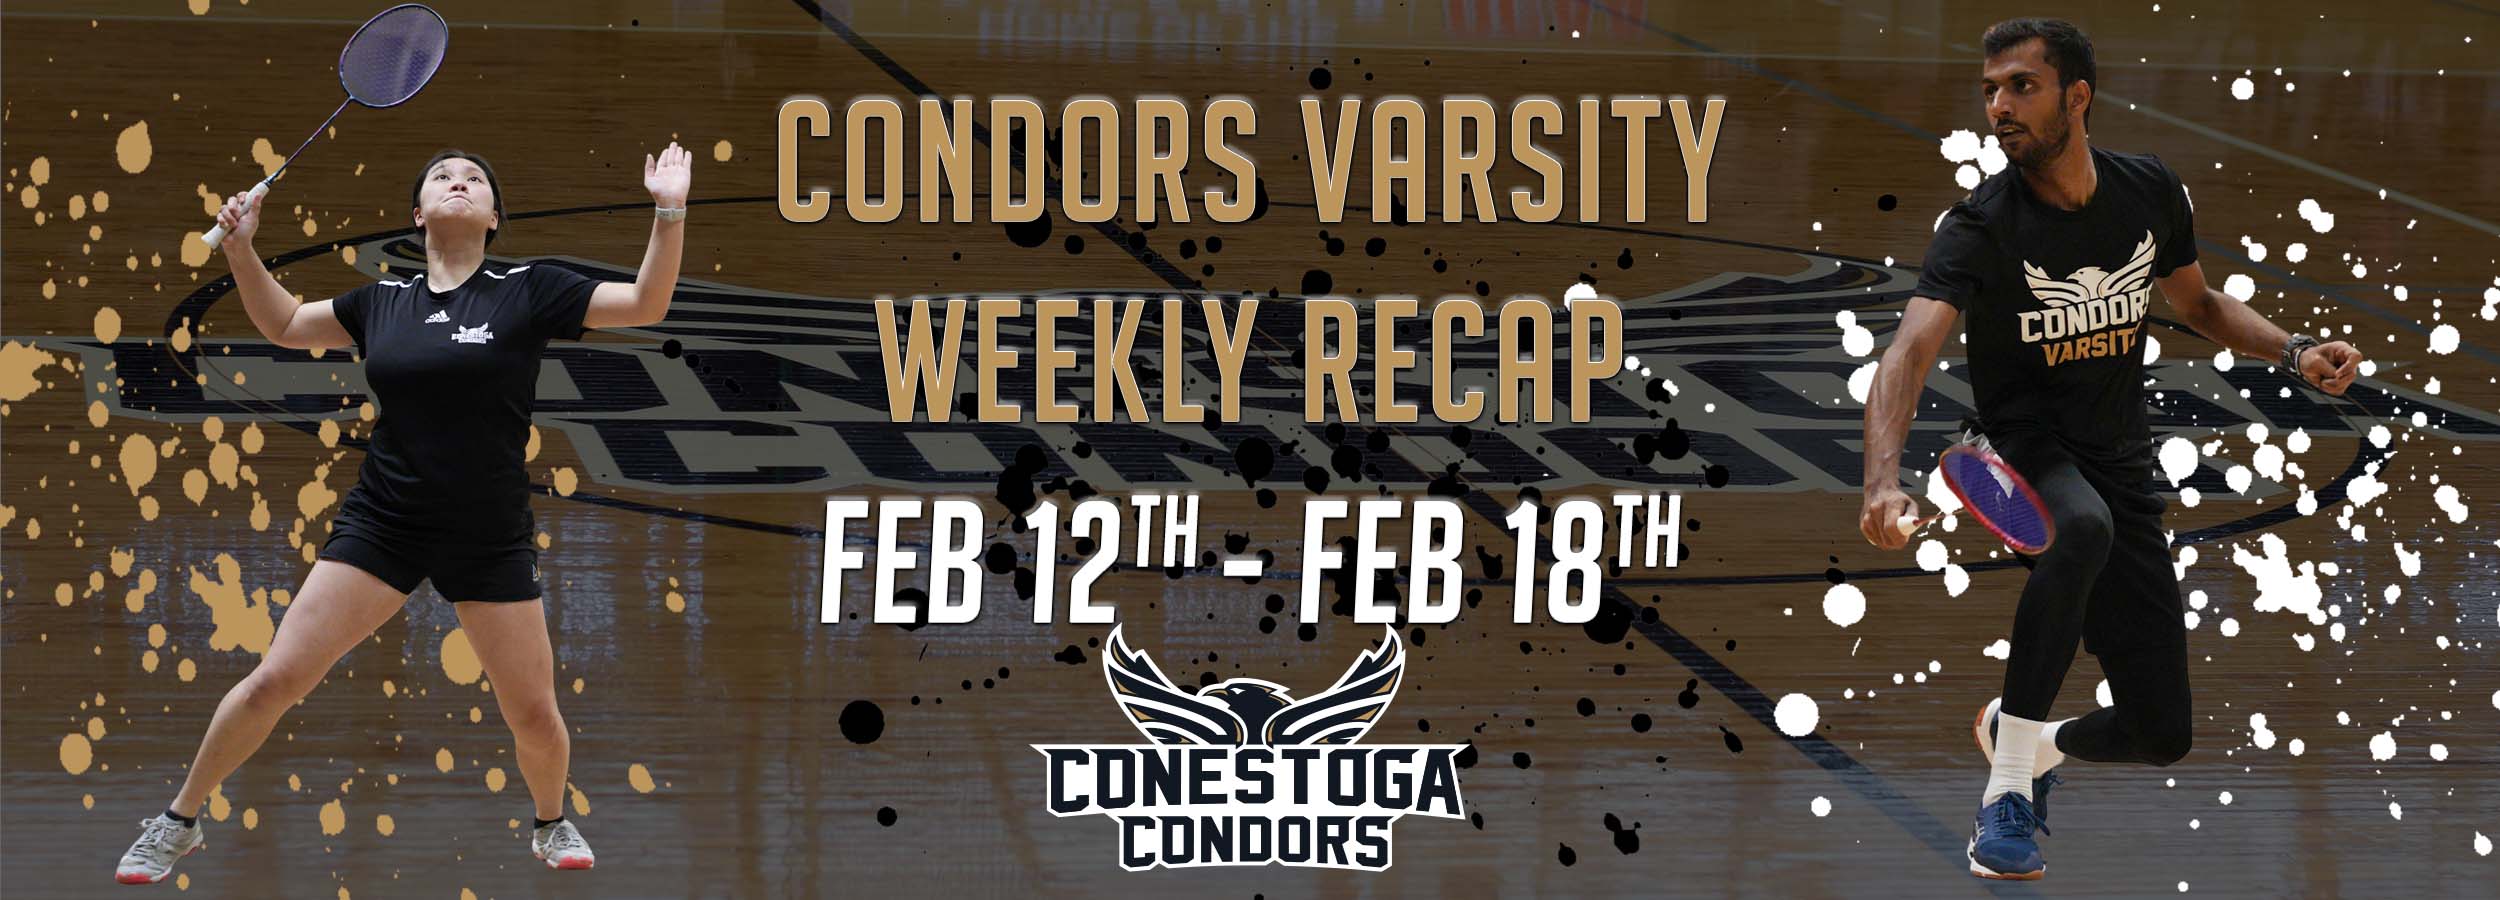 Condors Varsity Weekly Recap - February 12nd -18th